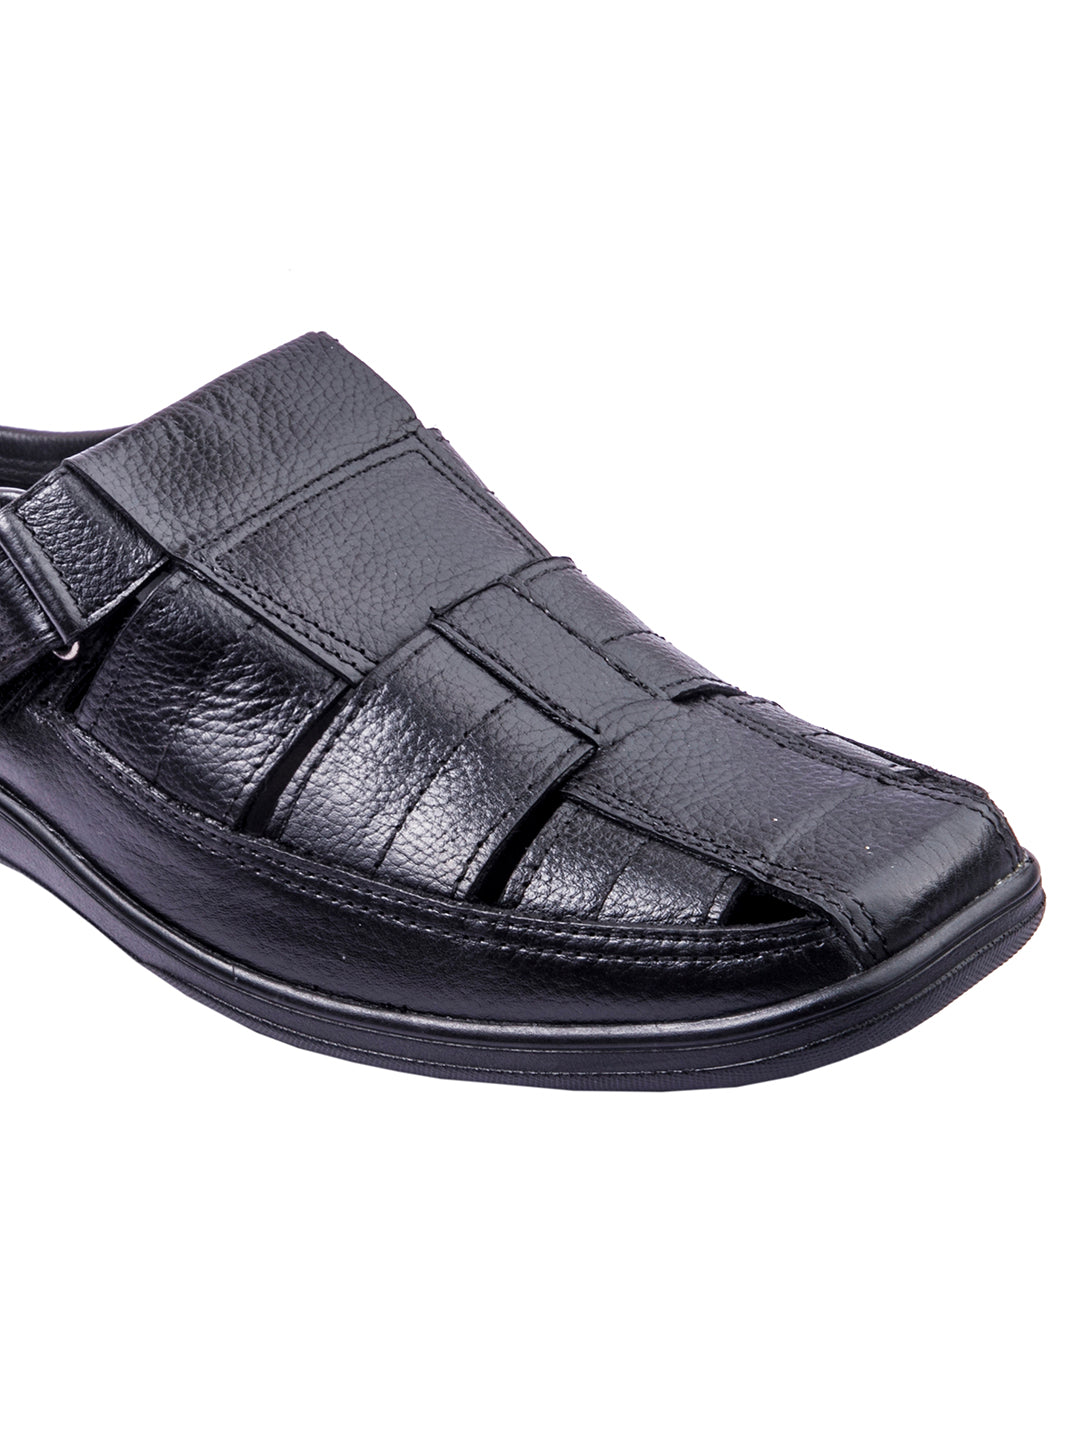 Trendsetter's Choice: Handmade Designer's Black Leather Open Sandals for Men